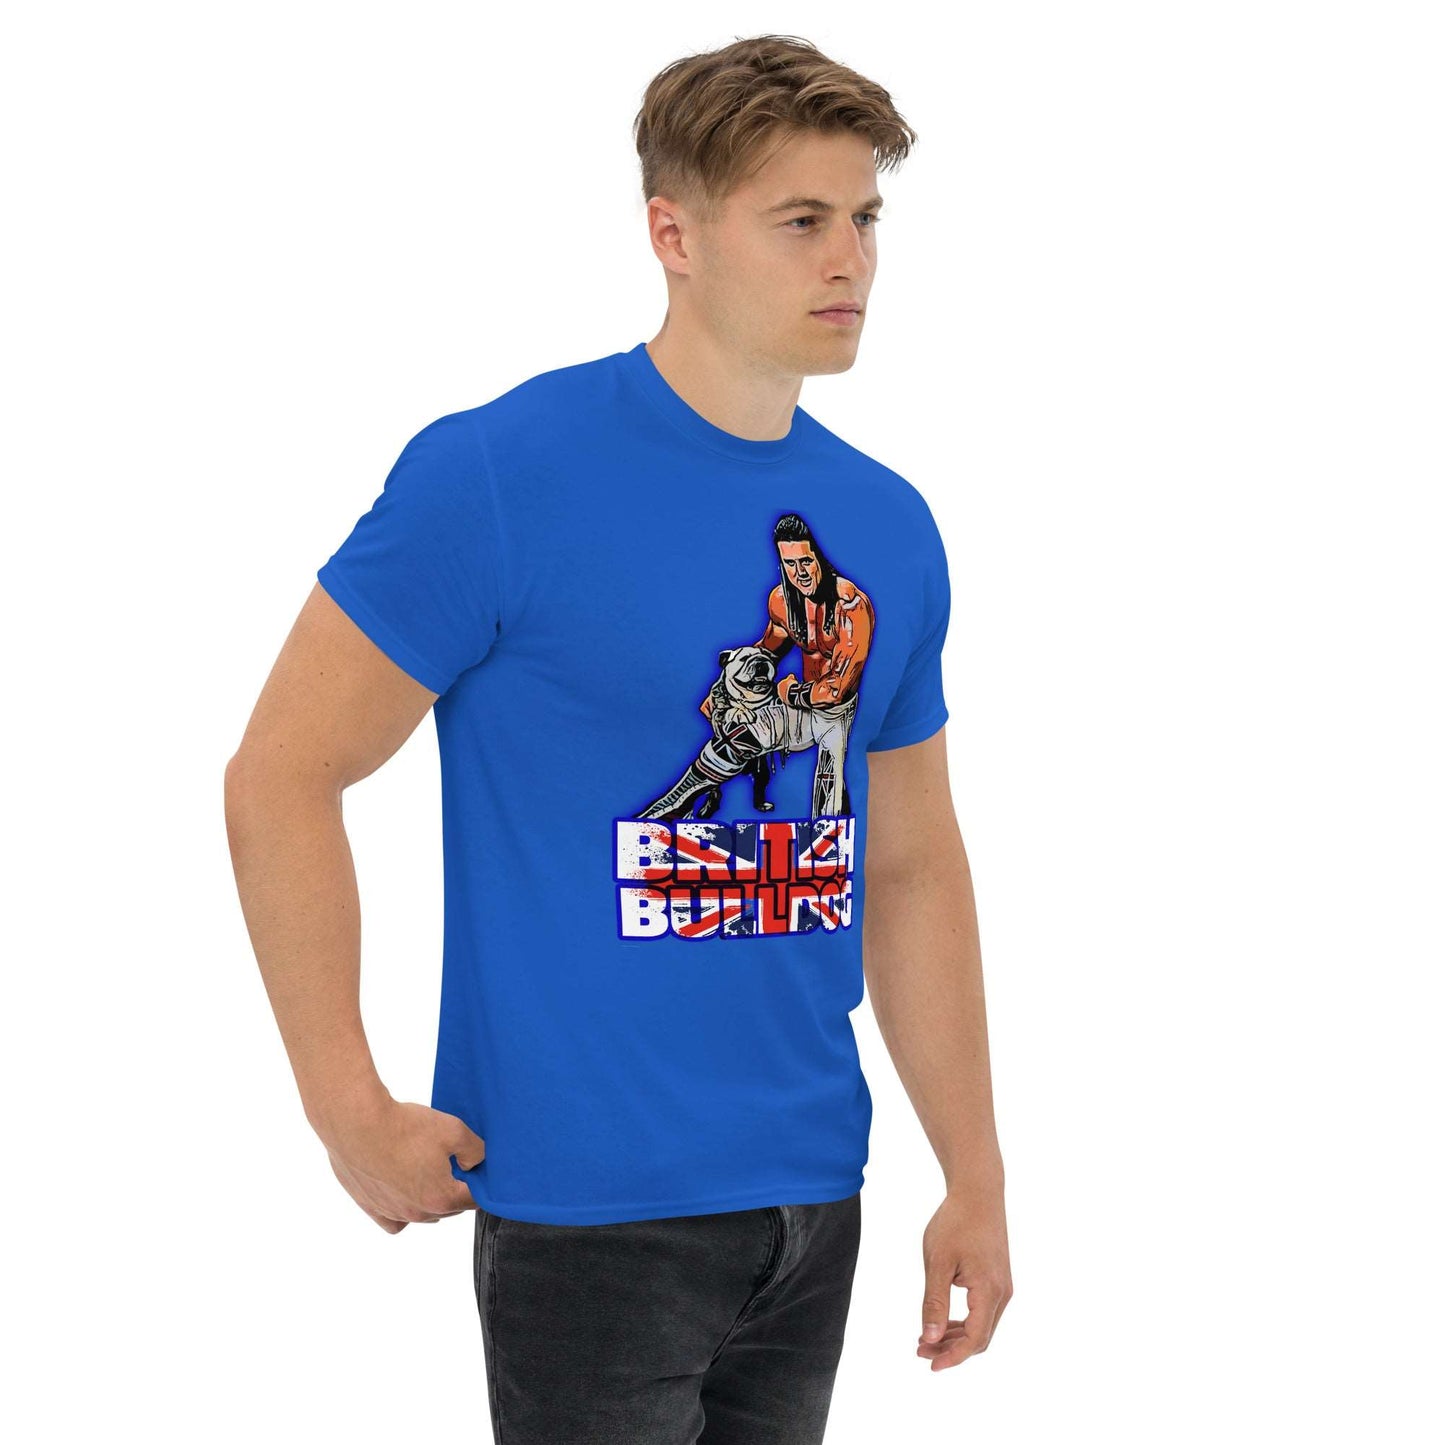 British Bulldog Davey Boy Smith Shirt - thenightmareinc